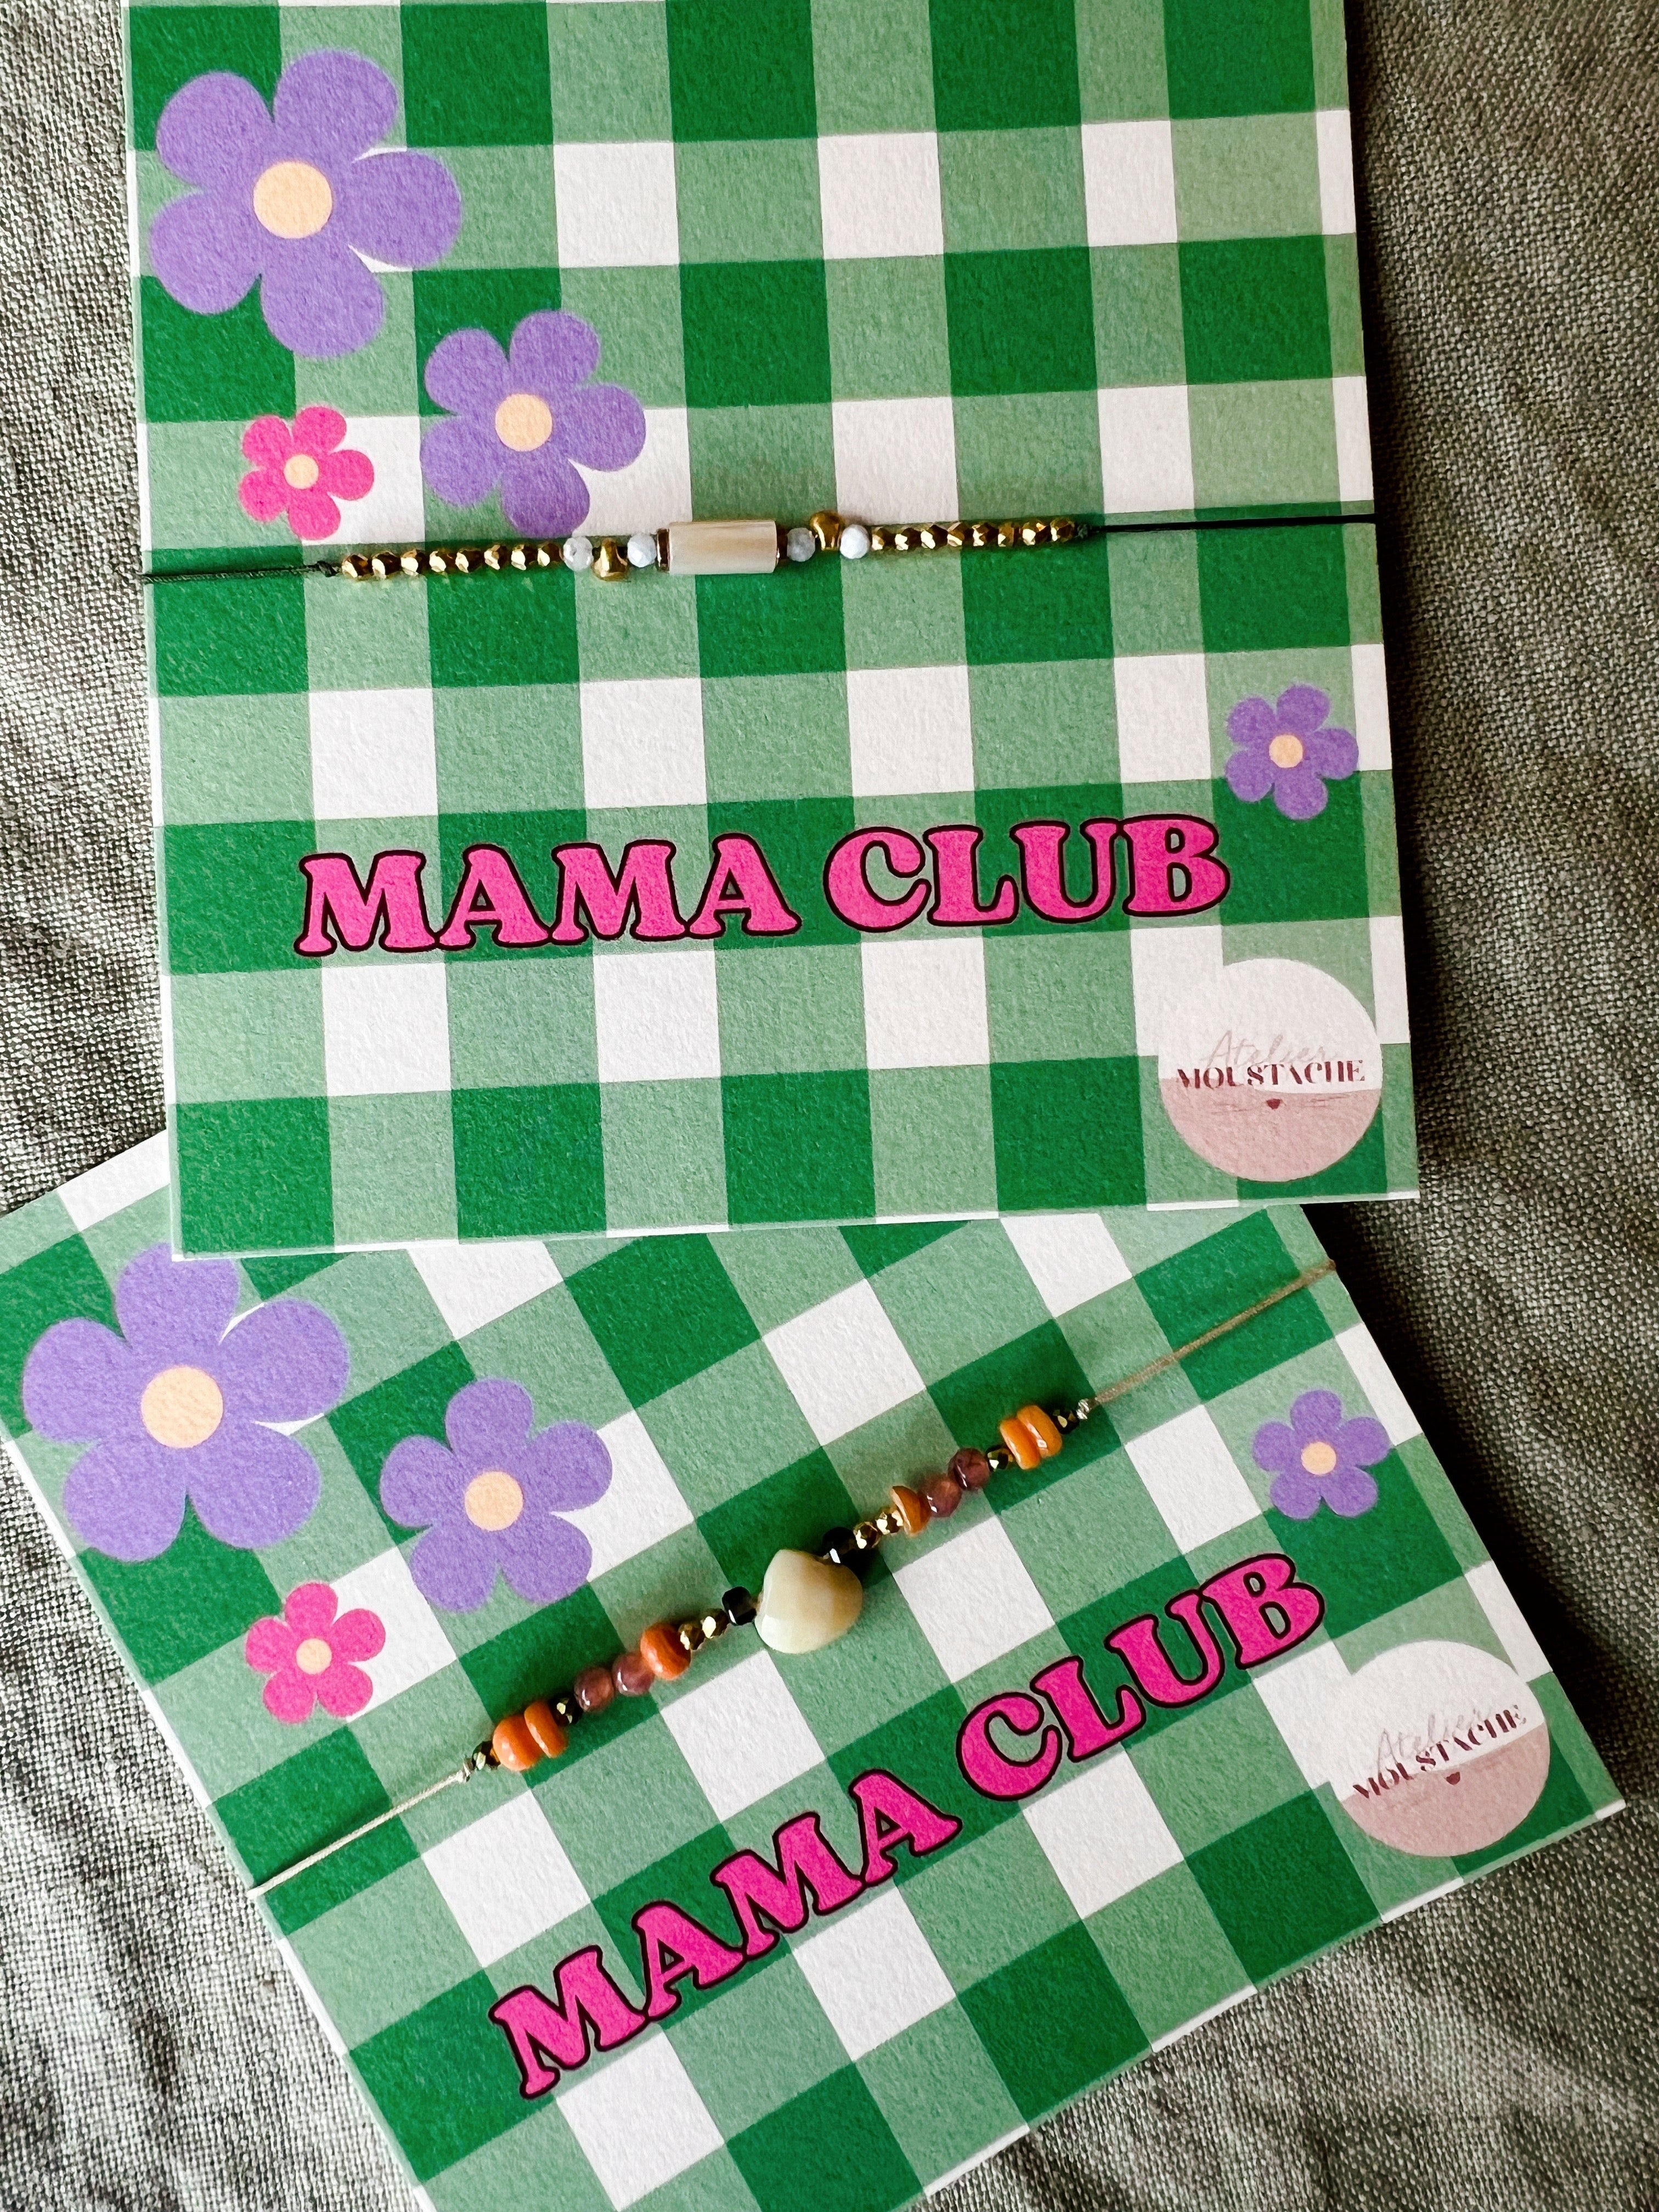 Mama club